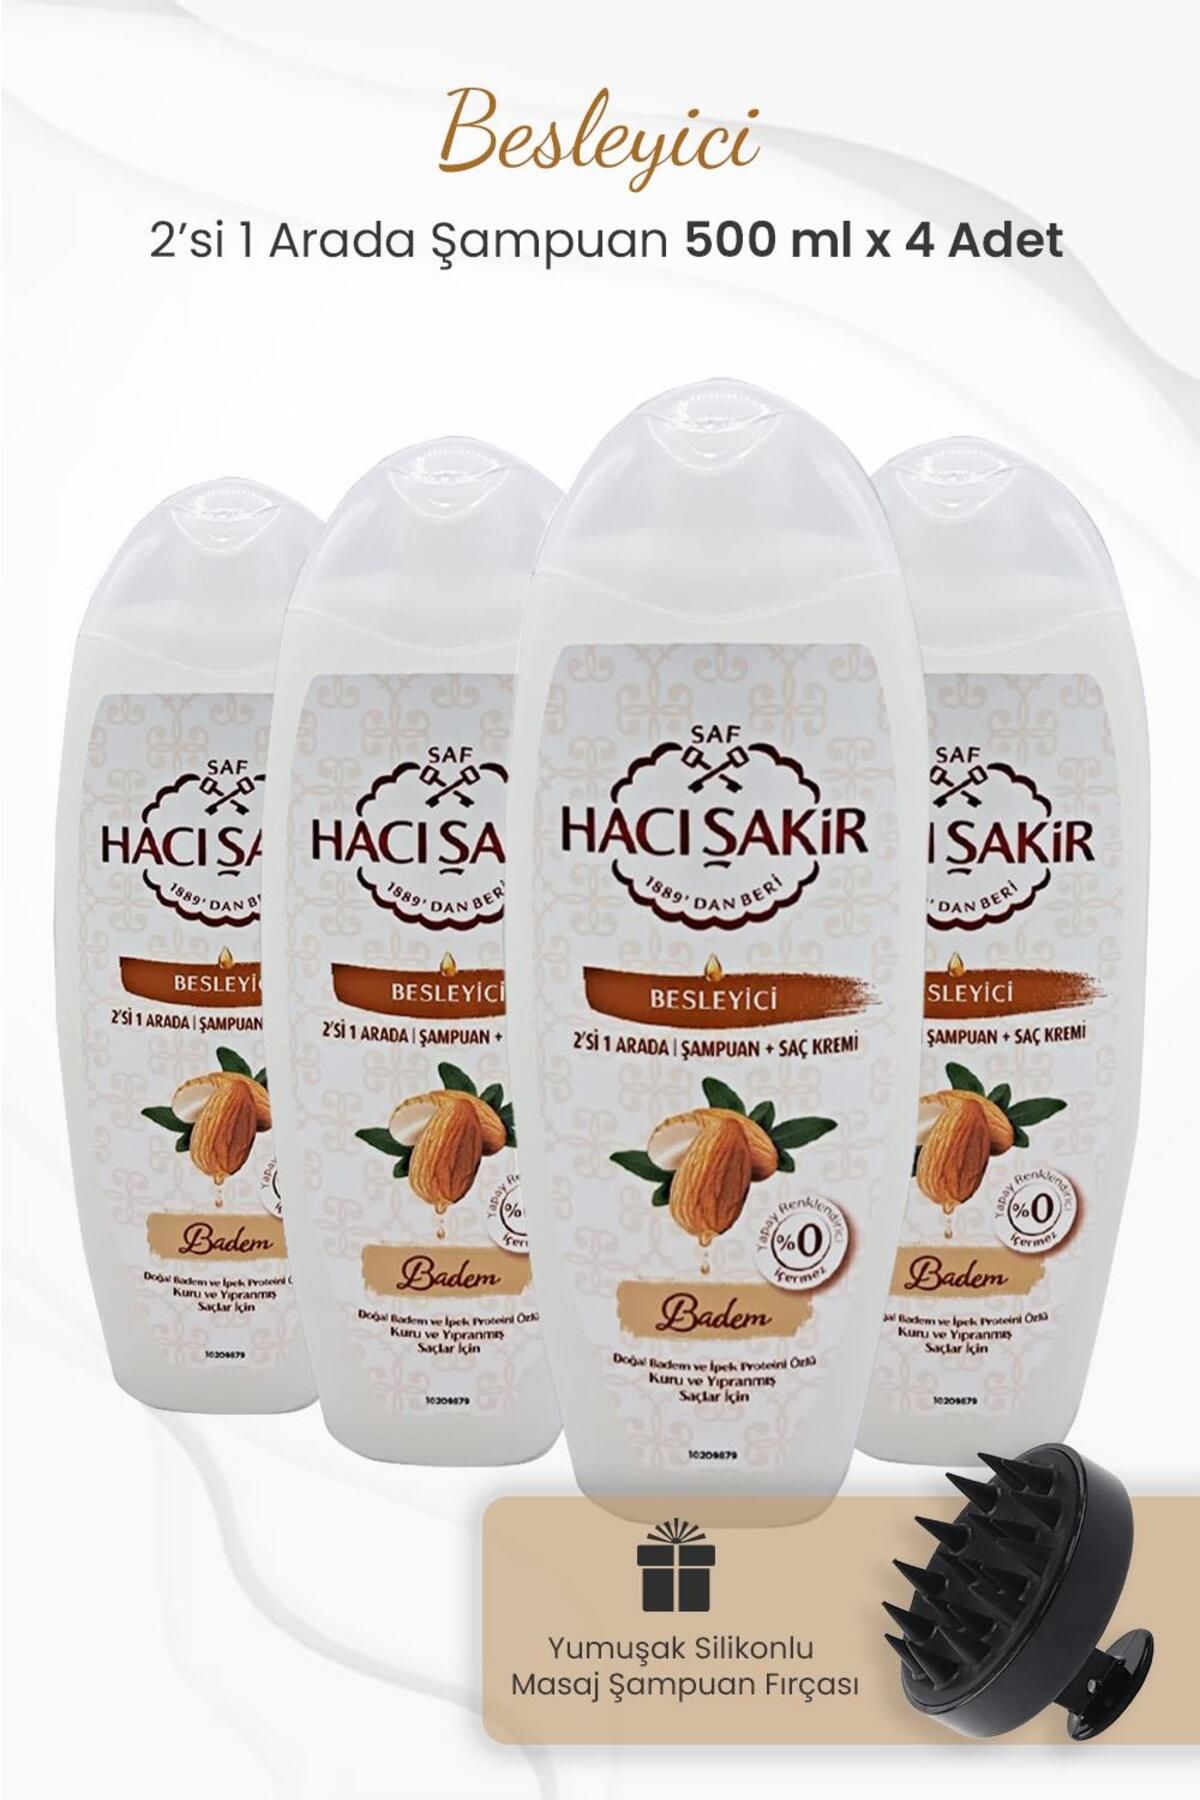 Hacı Şakir Badem 2si 1 Arada Şampuan 500 ml x 4 Adet ve Şampuan Fırçası Siyah